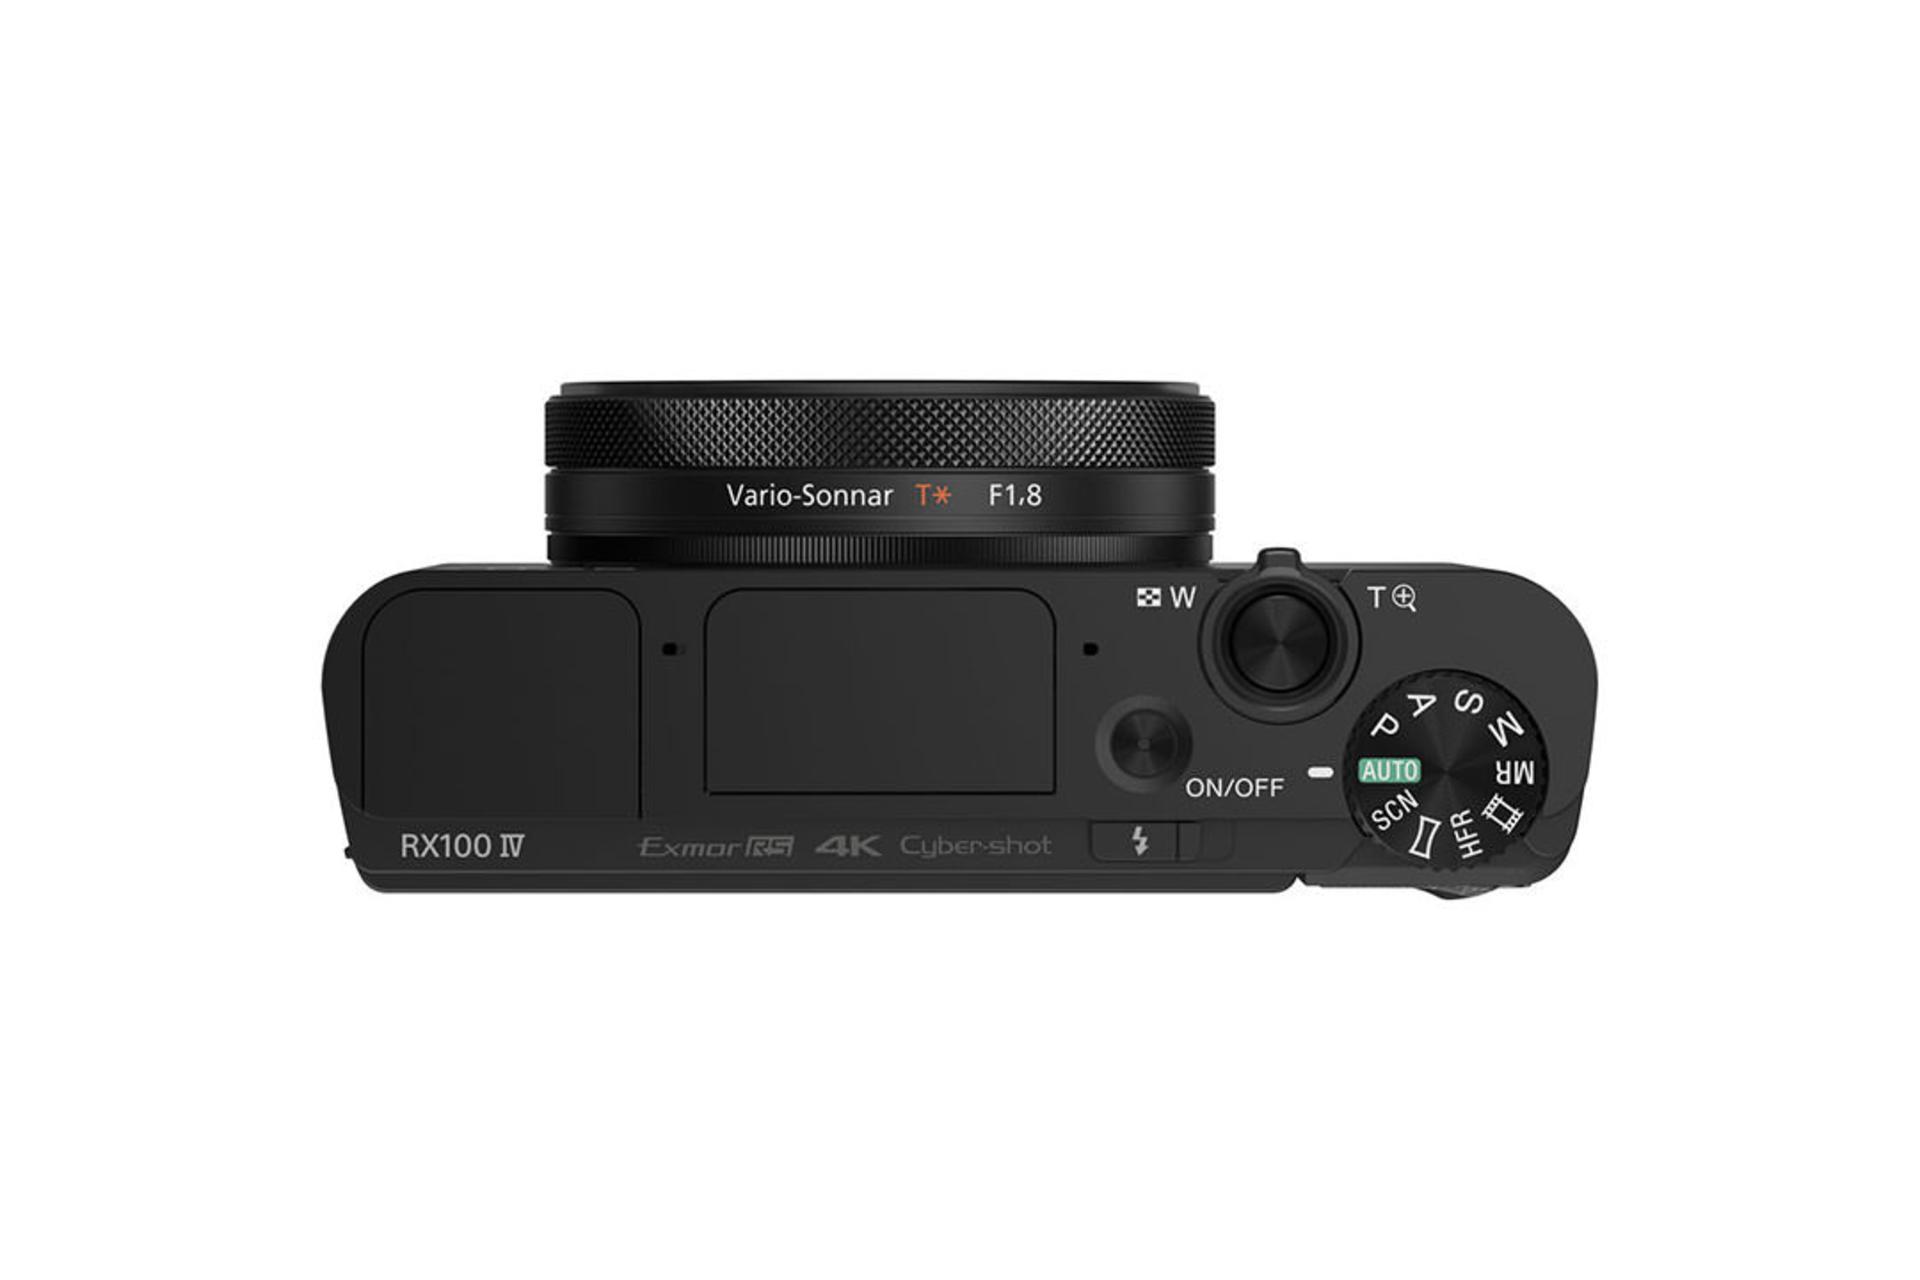 Sony Cyber-shot DSC-RX100 IV	